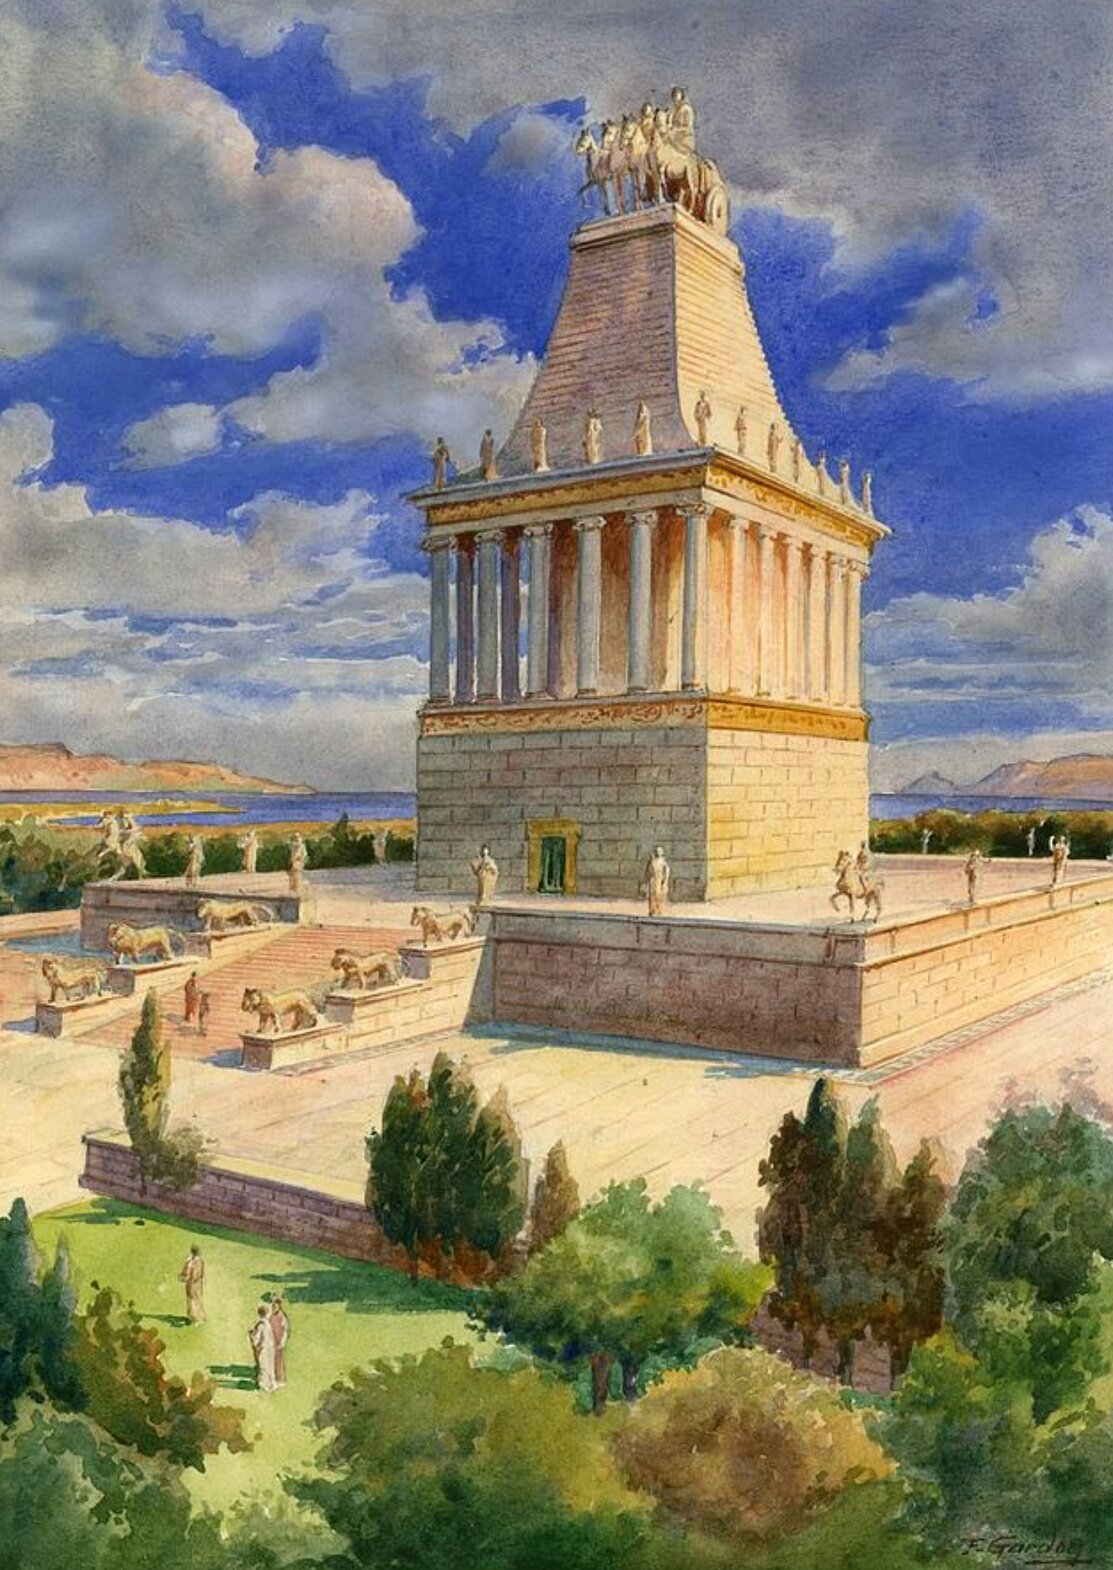 Fran Navarro Twitterissä: "Ilustración del Mausoleo de Halicarnaso, una de las Siete Maravillas del mundo antiguo, construido en el 350 a. C para el sátrapa Mausolo. https://t.co/63bC2i7I2t" / Twitter